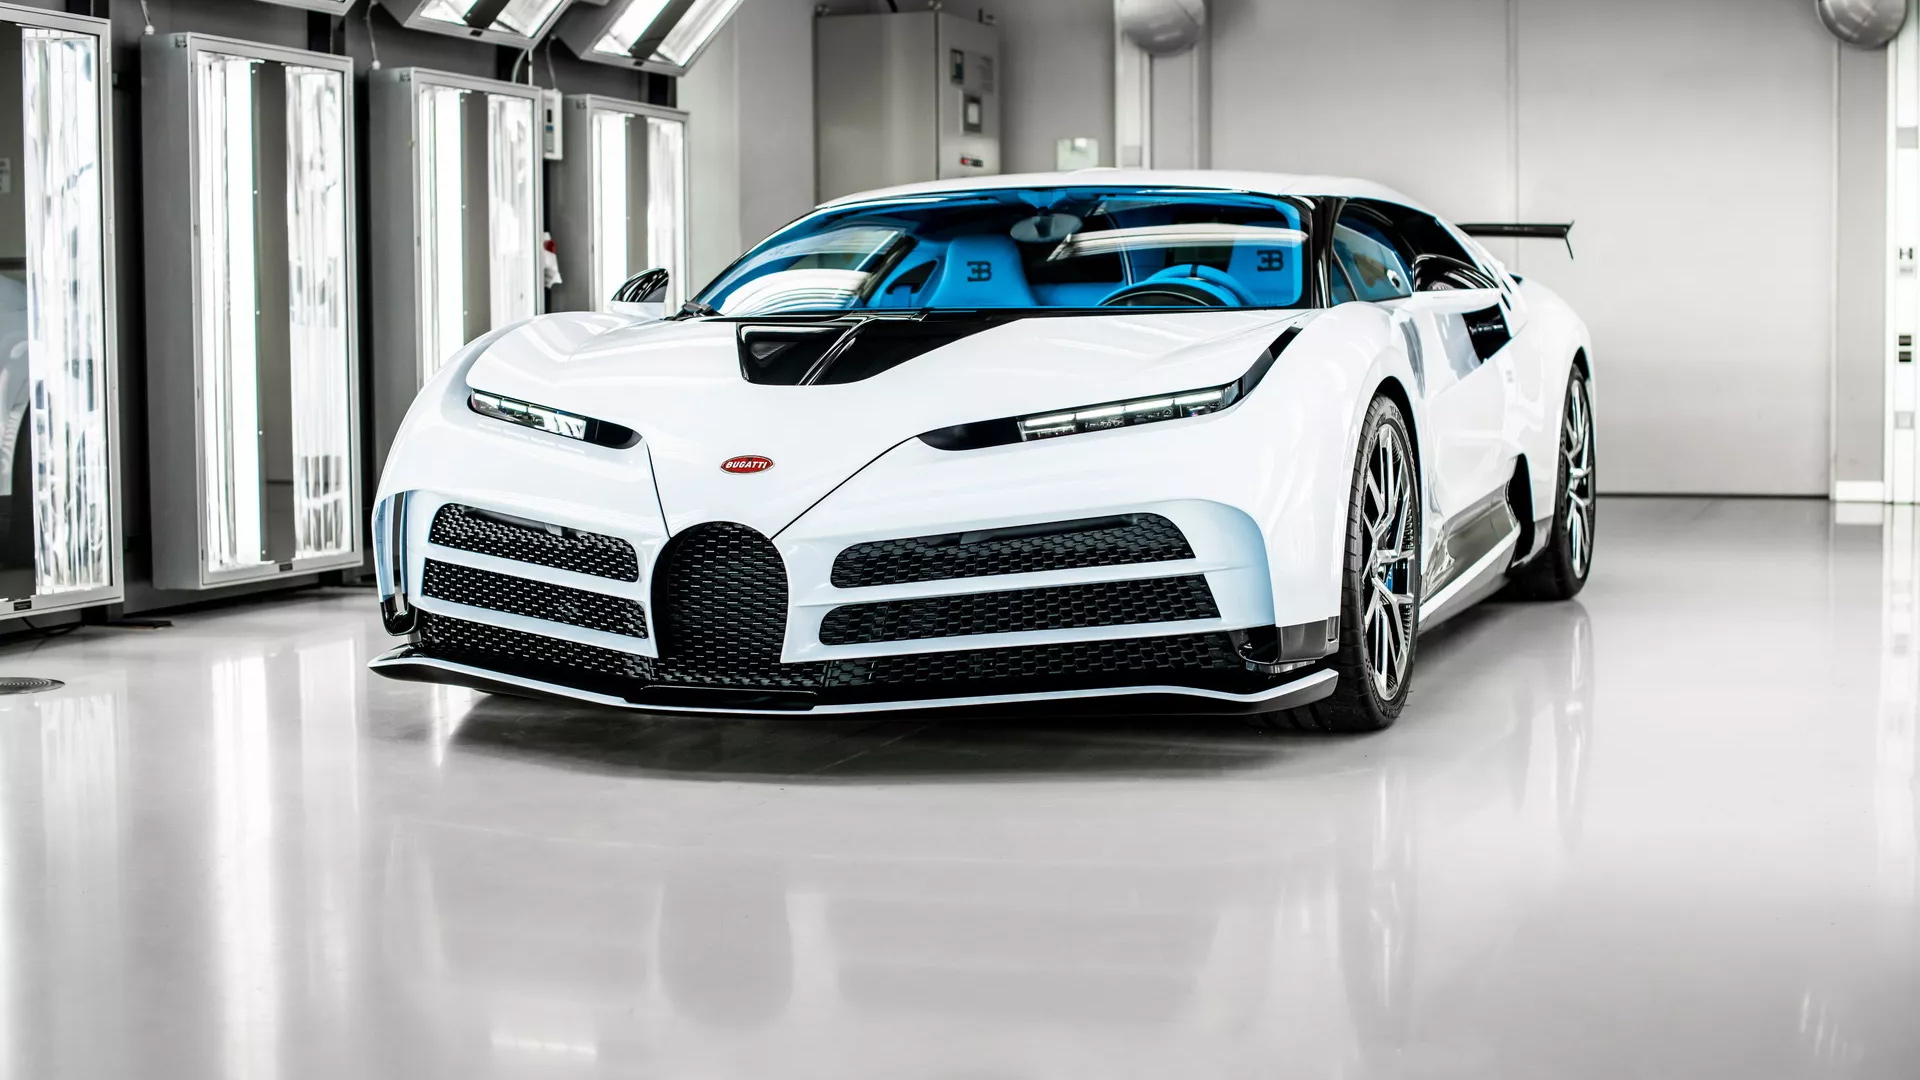 Siêu xe triệu đô Bugatti Centodieci cuối cùng được giao đến tay khách hàng